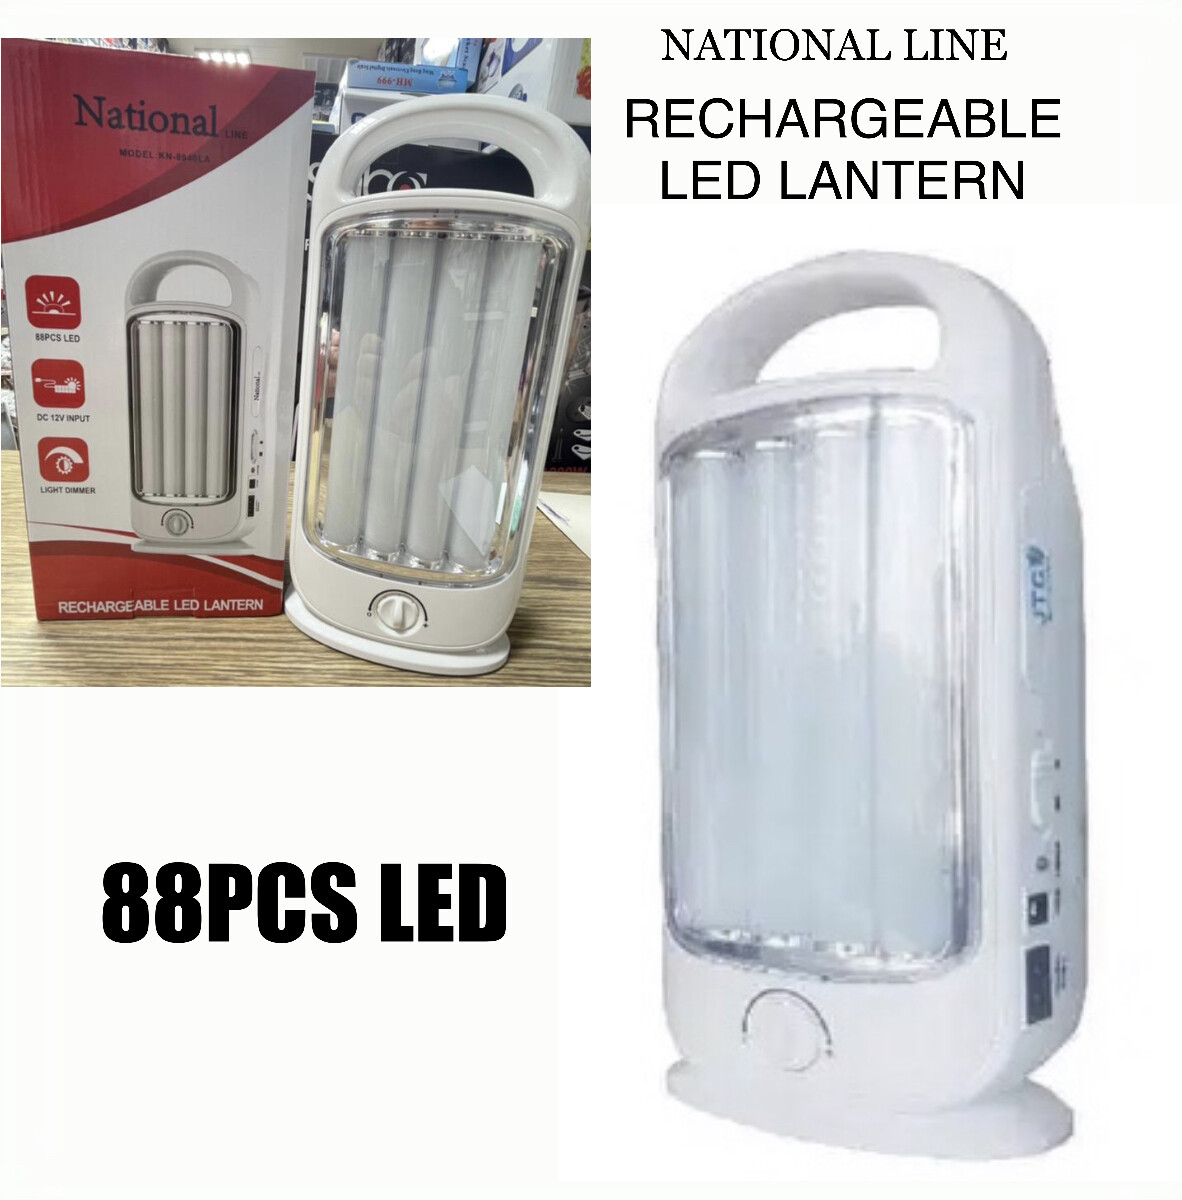 LED Lantern (88Pc LED)